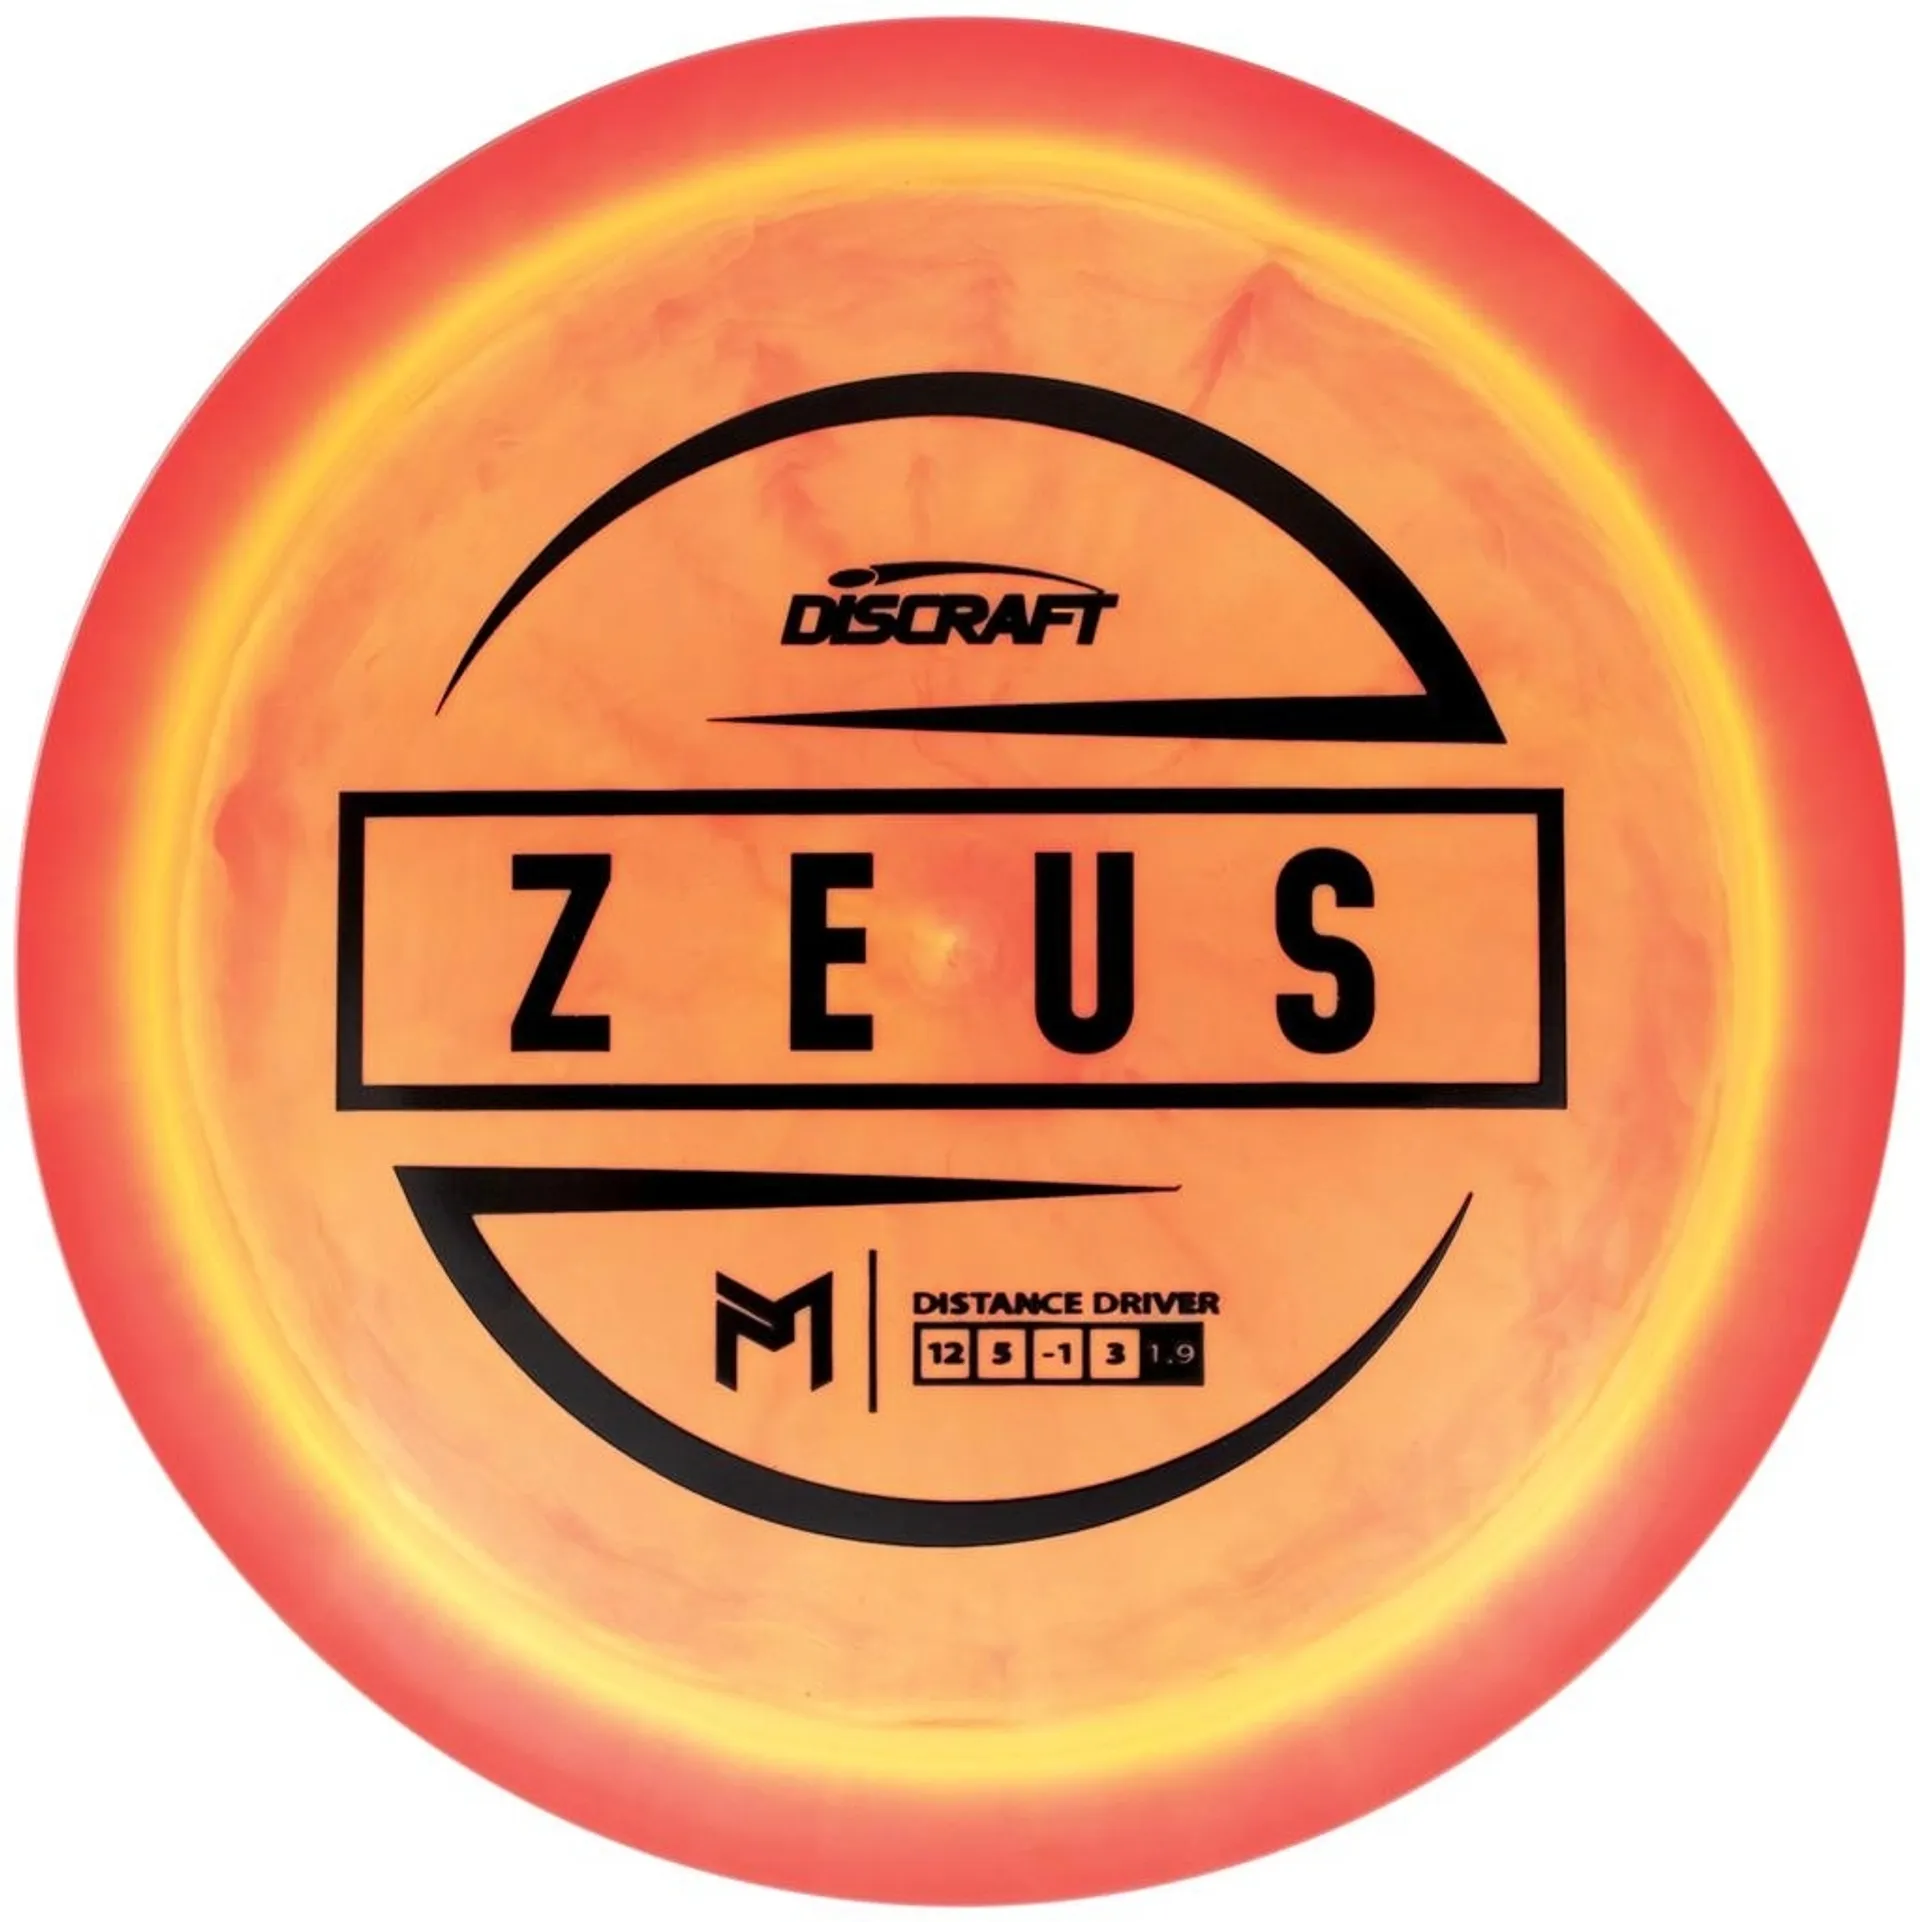 Discraft draiveri ESP Zeus Paul McBeth Signature Driver